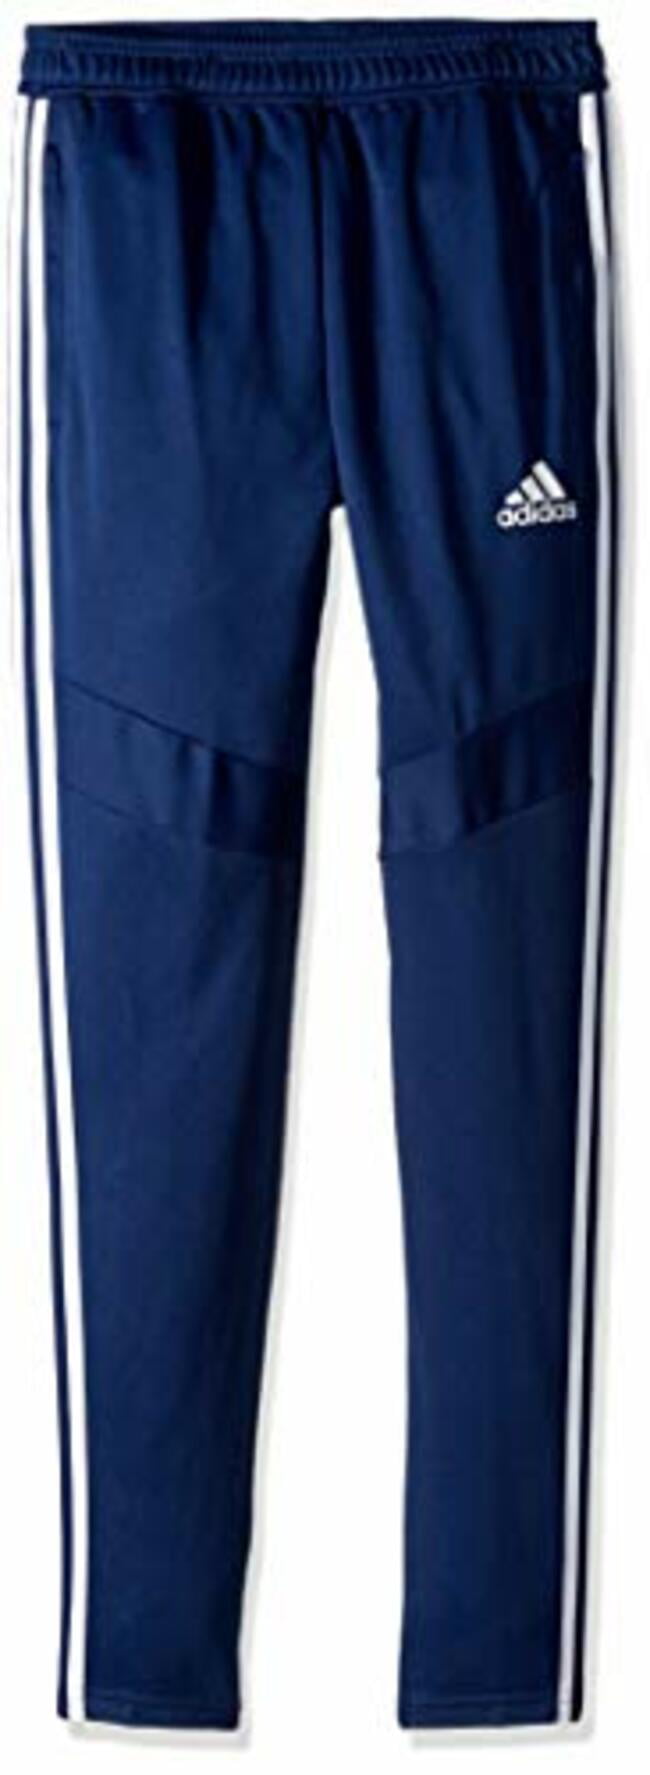 navy blue adidas pants mens